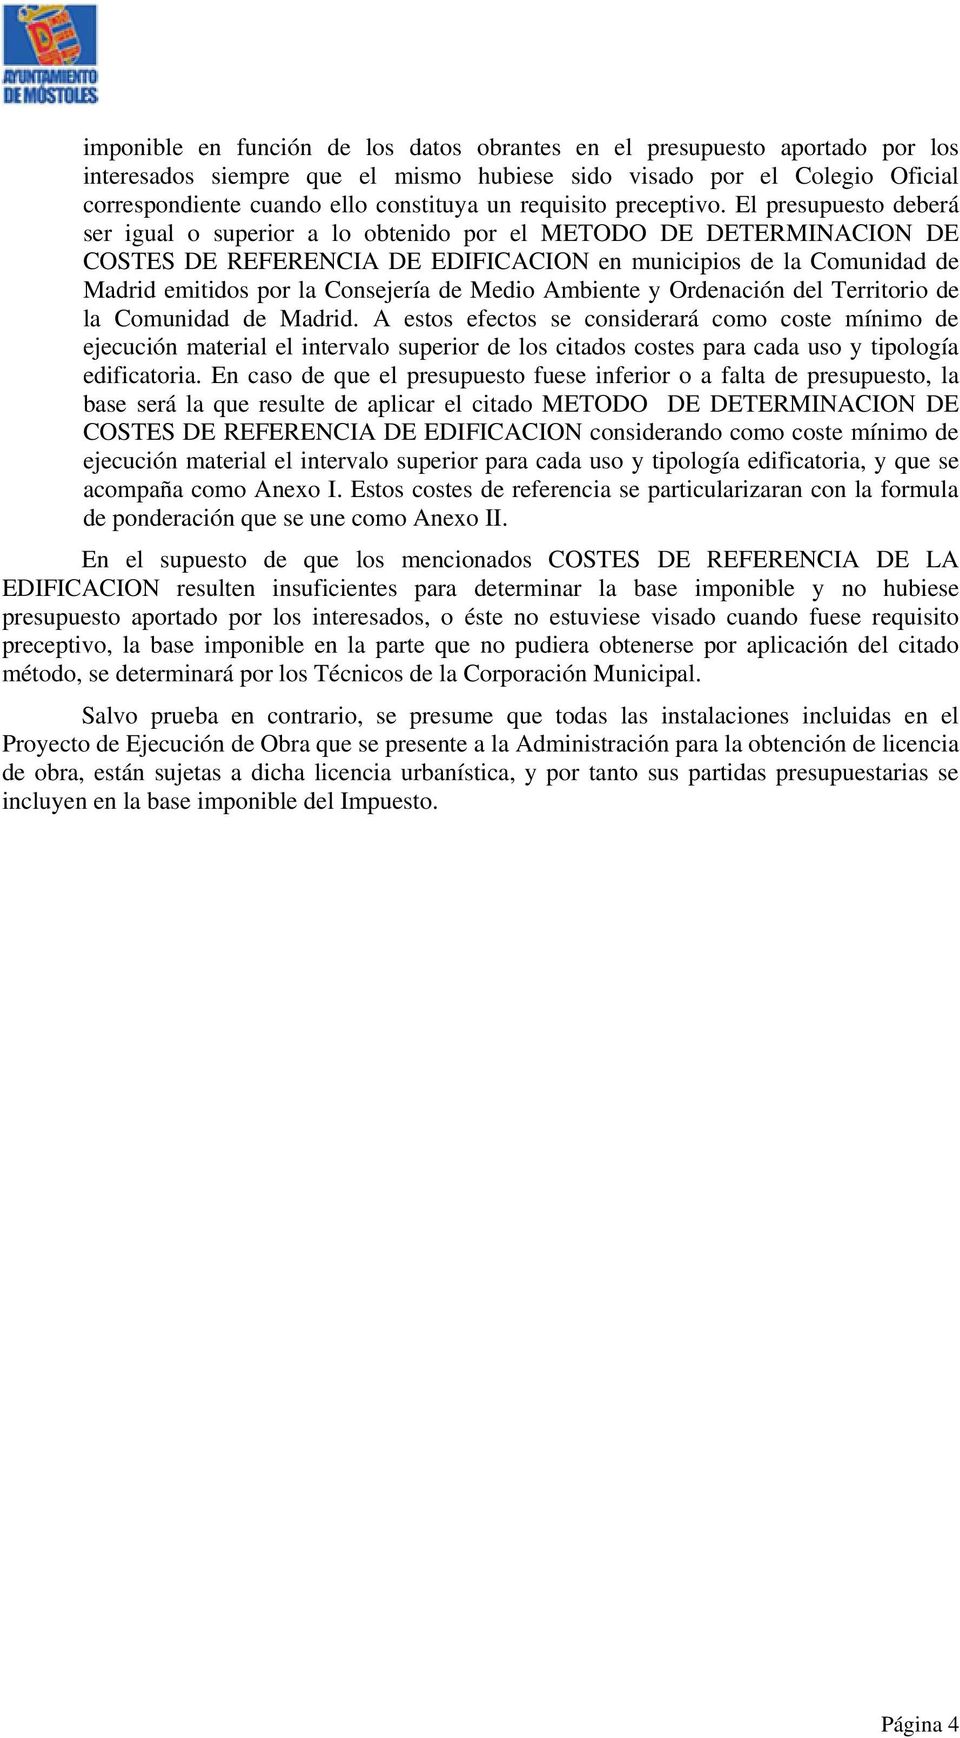 El presupuesto deberá ser igual o superior a lo obtenido por el METODO DE DETERMINACION DE COSTES DE REFERENCIA DE EDIFICACION en municipios de la Comunidad de Madrid emitidos por la Consejería de